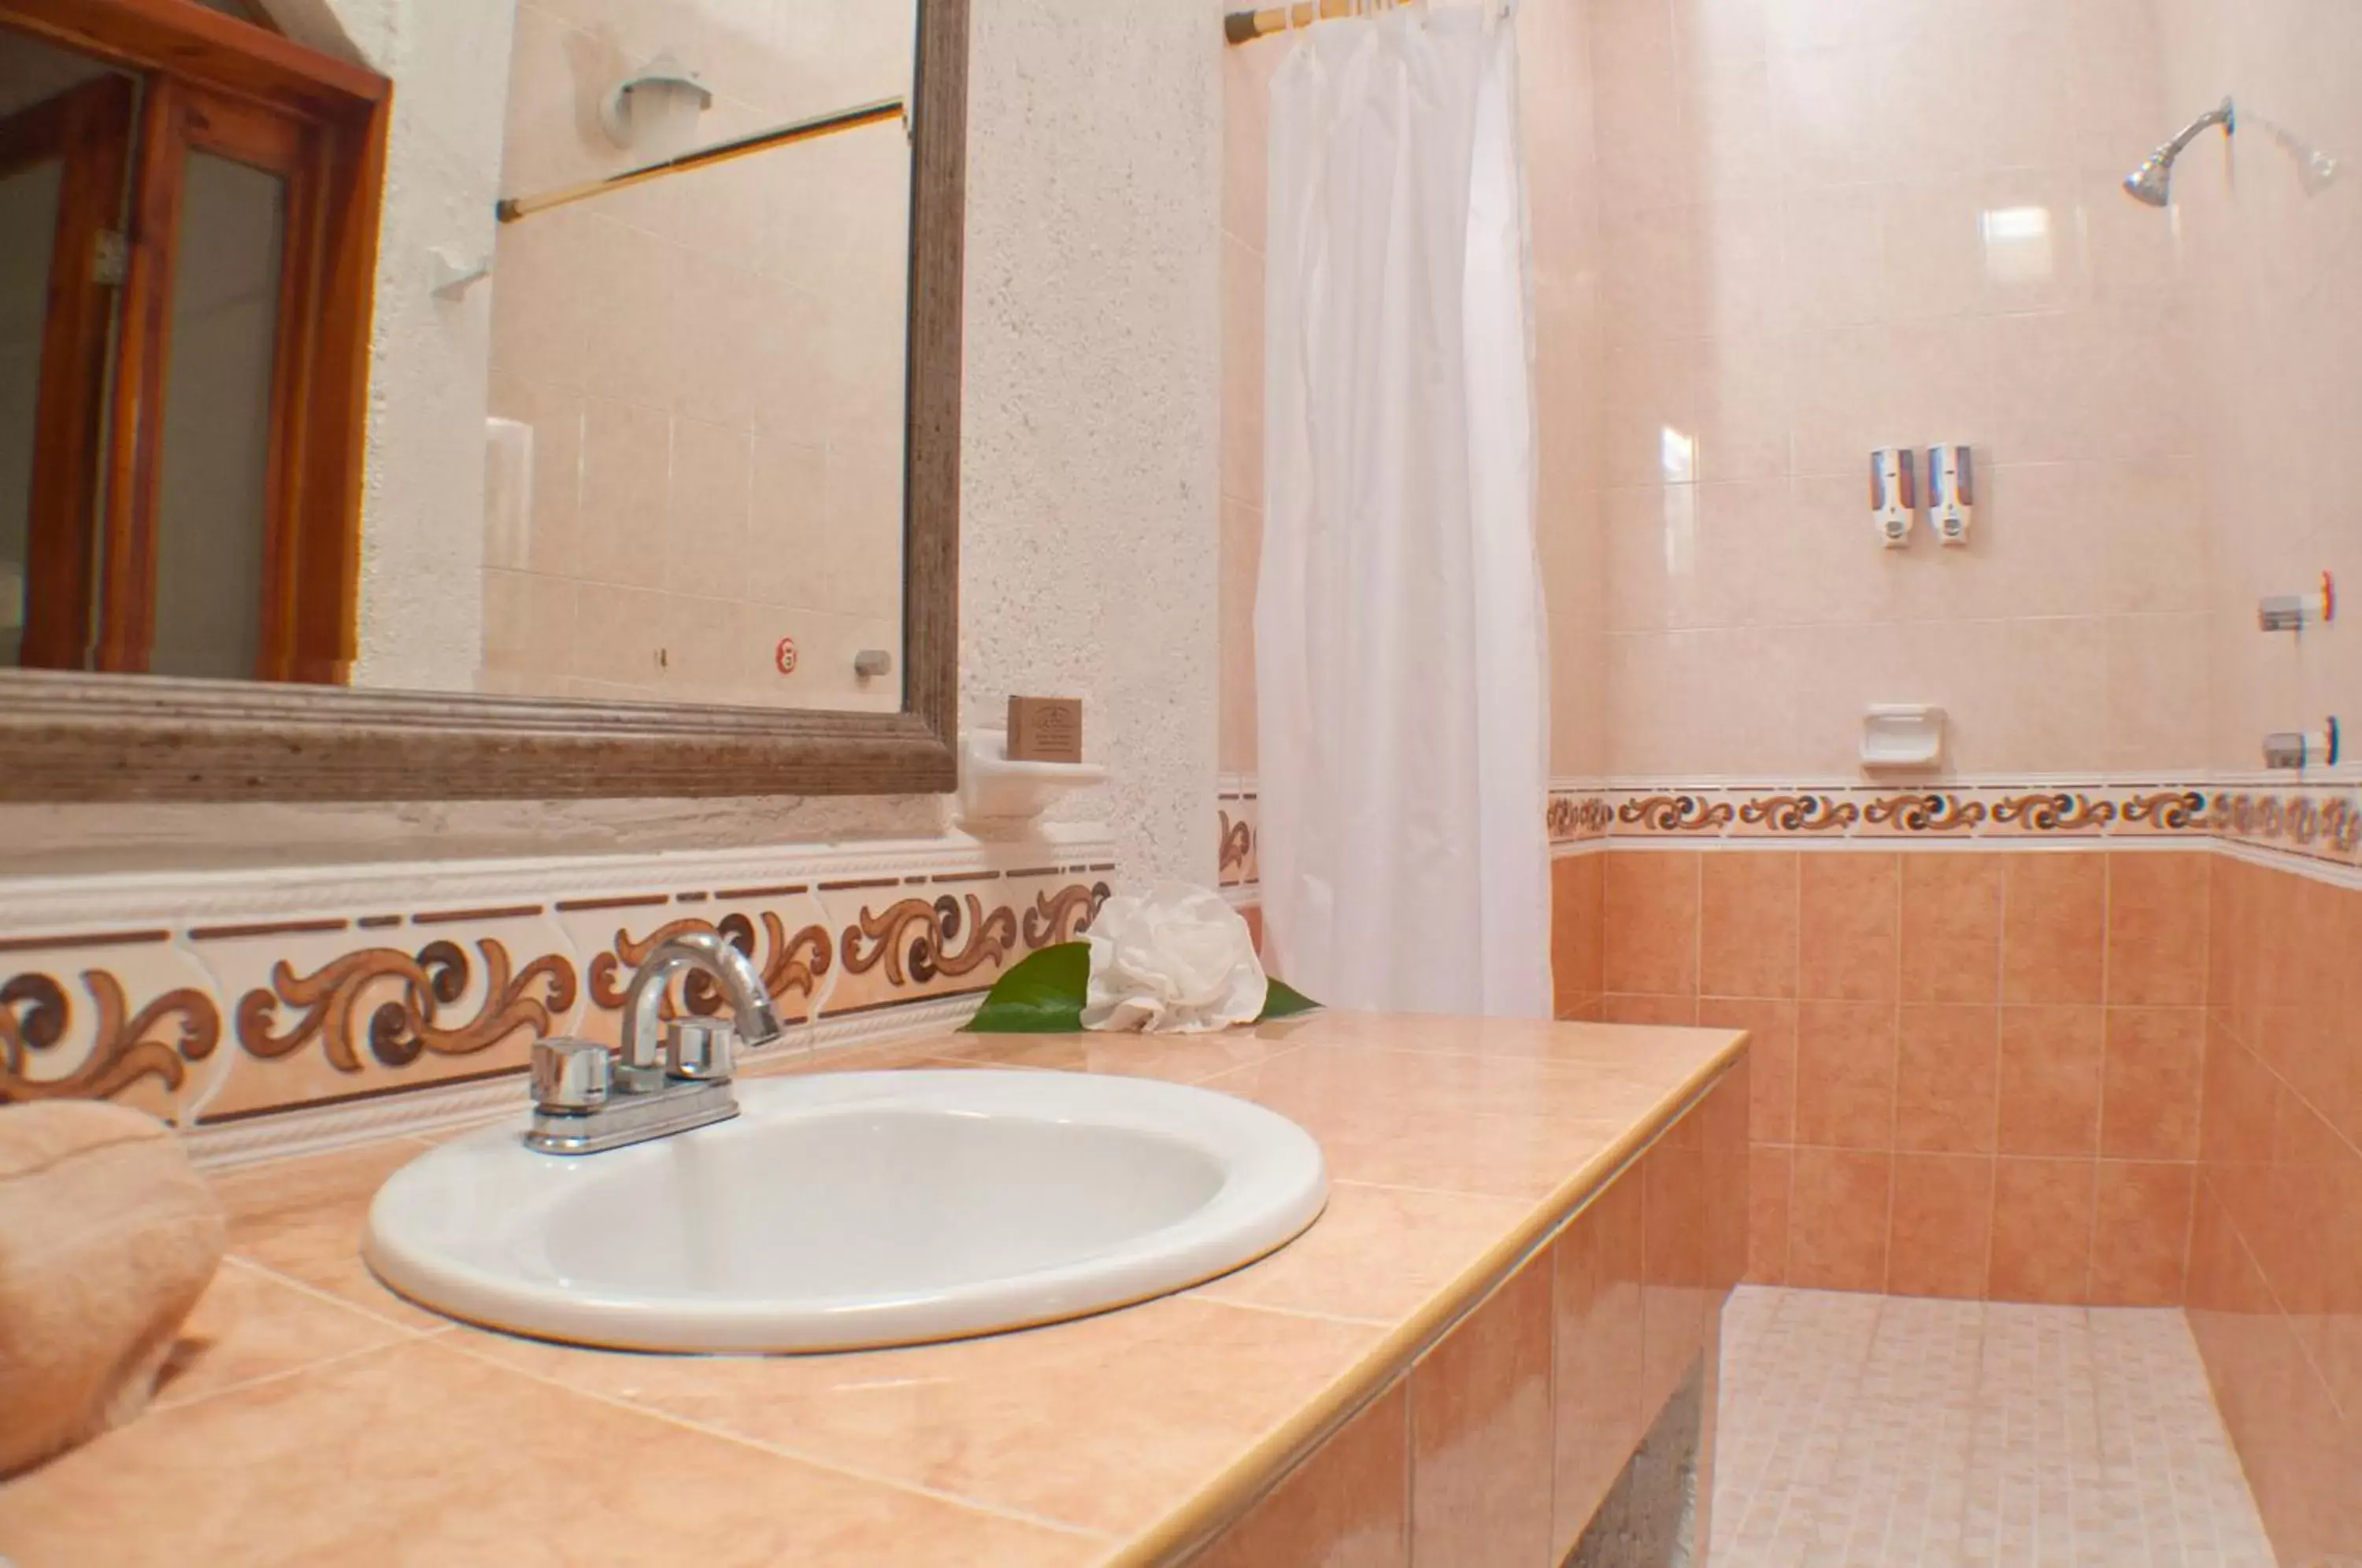 Bathroom in Eco-hotel El Rey del Caribe